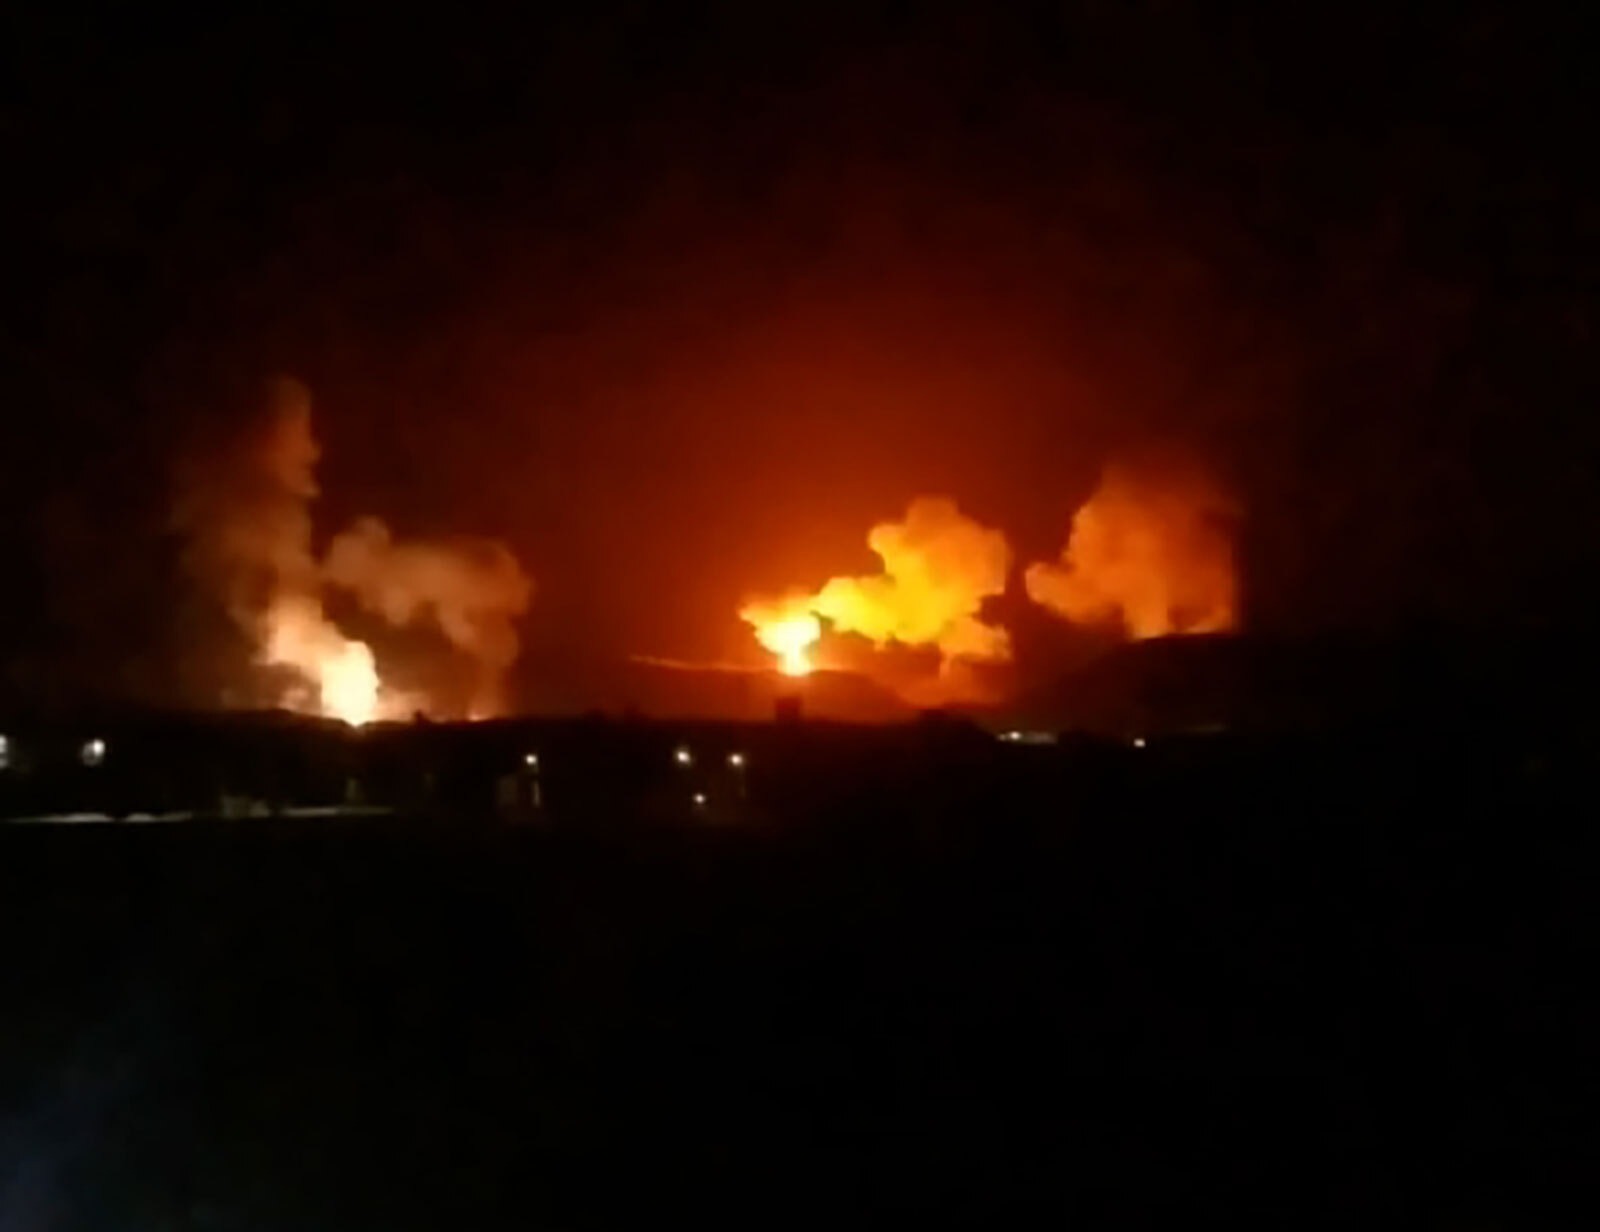 Hình ảnh được cho là các vụ nổ ở tỉnh Saada, phía bắc thủ đô Sanaa, ngày 12/1 sau đòn tập kích của lực lượng Mỹ, Anh nhằm vào Houthi ở Yemen. Ảnh: CNN